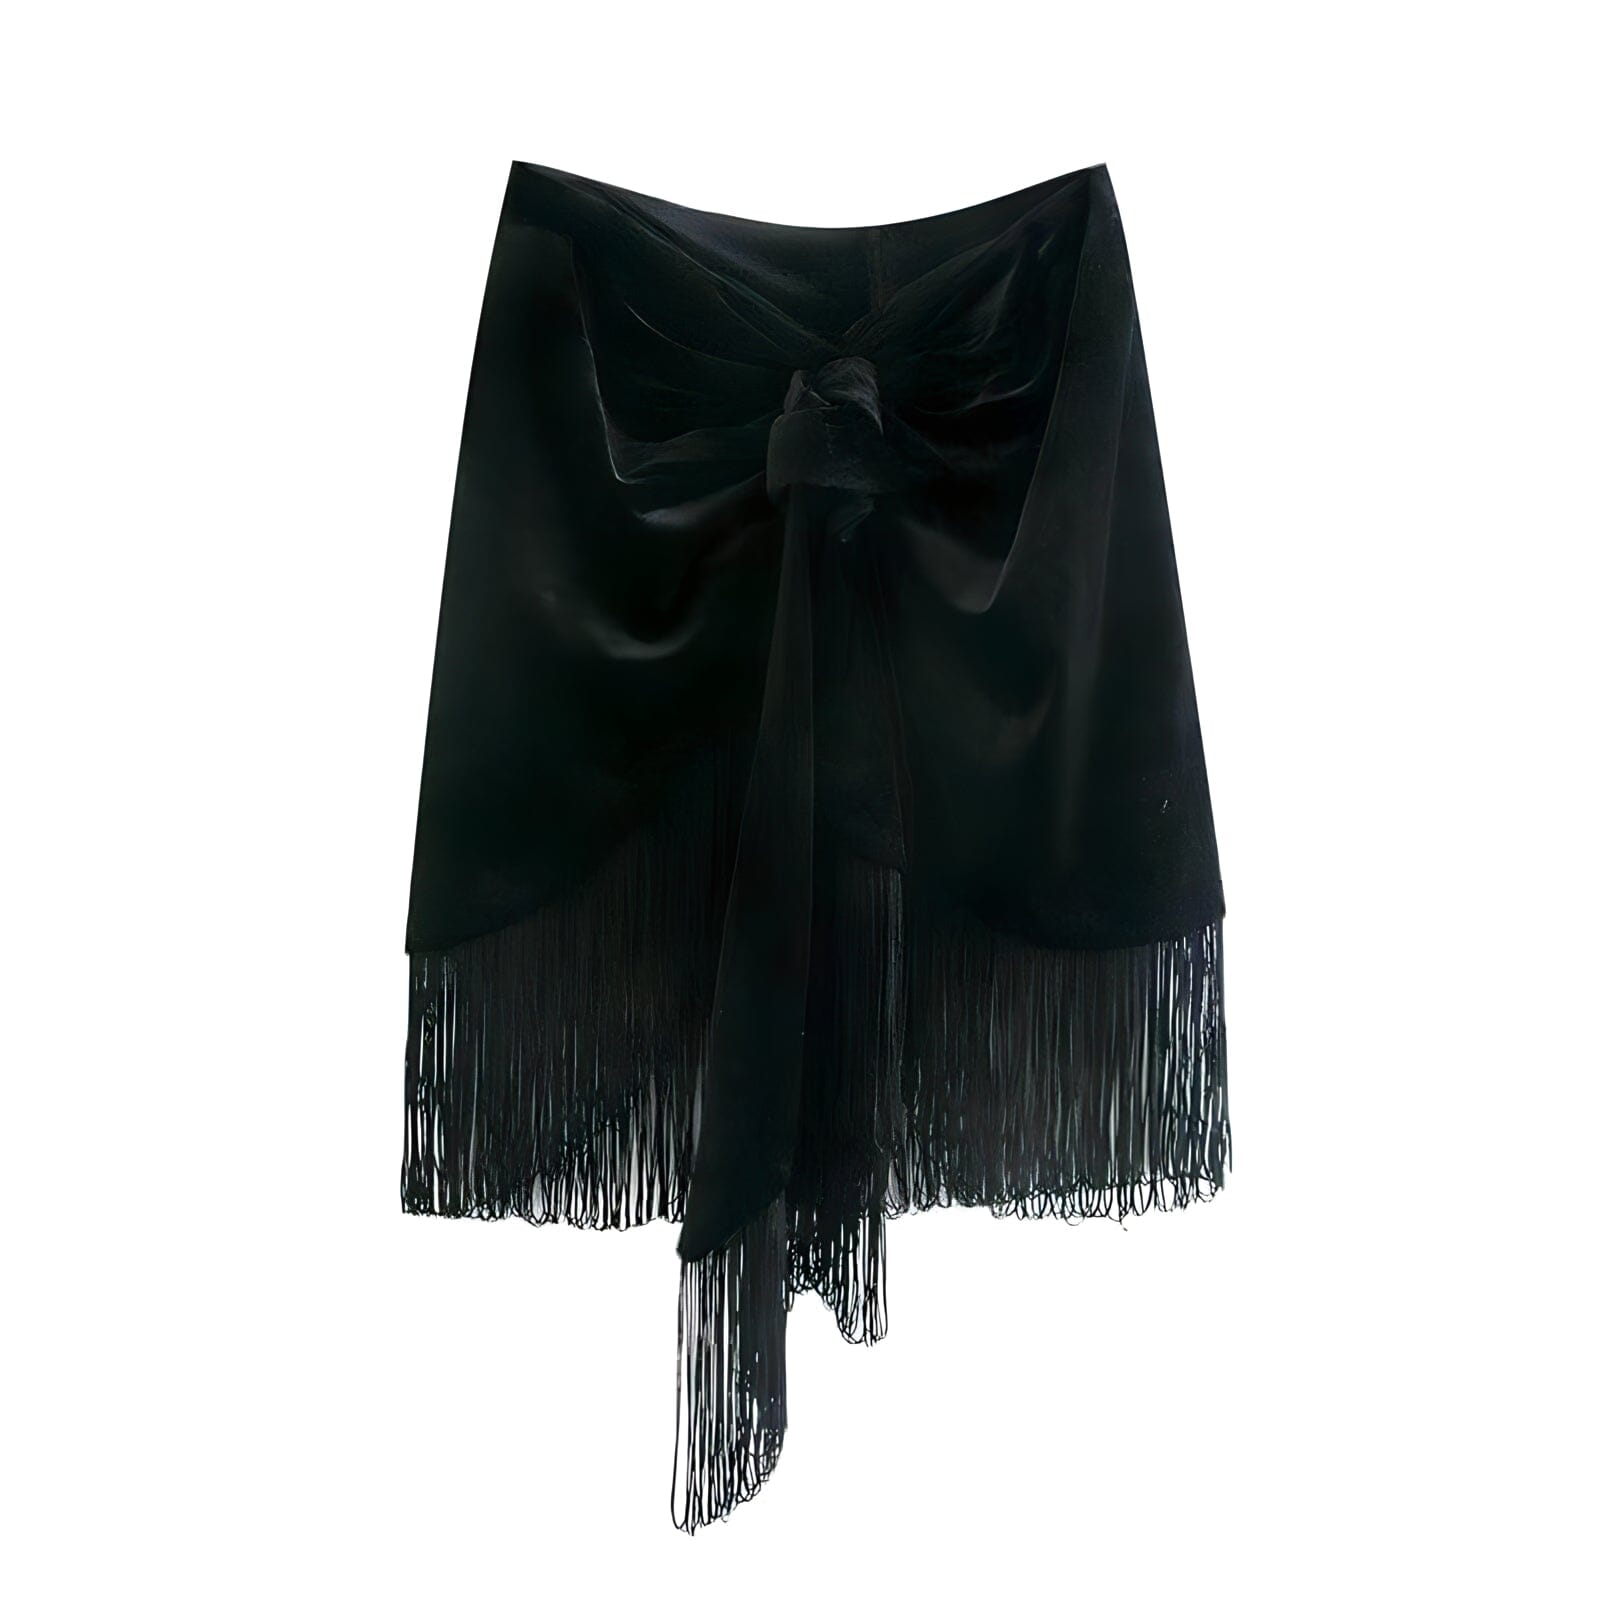 The Savannah Tassel Mini Skirt - Black Sarah Ashley S 